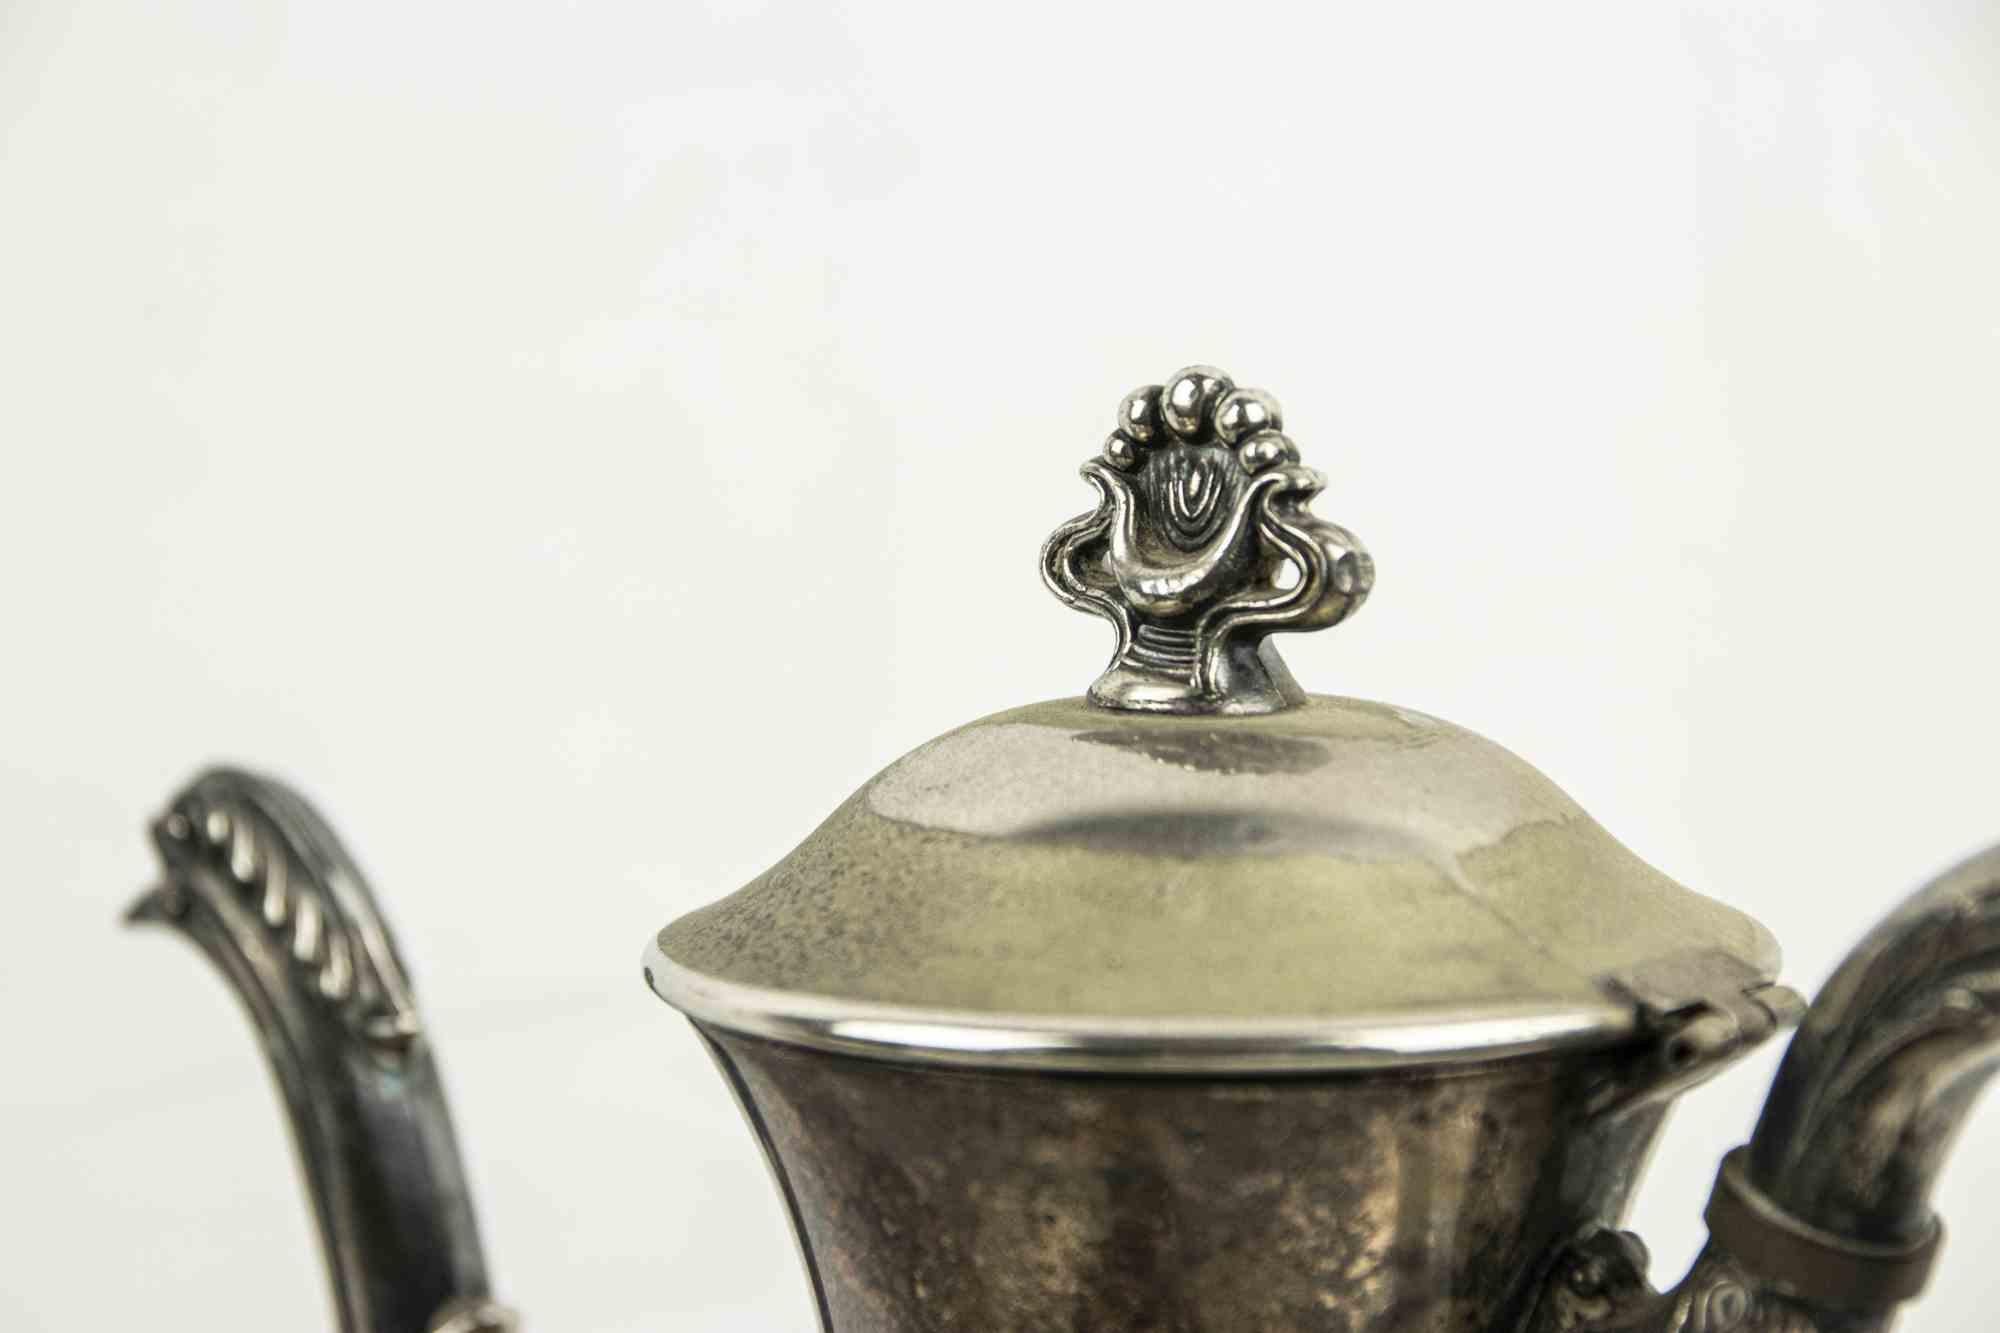 Silbernes Teeservice ist ein originaler Silbergegenstand, der von einem italienischen Hersteller im frühen 20.

Ein Silberset bestehend aus drei Teekannen und zwei Schälchen.

Angemessene Bedingungen

Abmessungen:

Teekanne 1: 24 x 26 cm

Teekanne